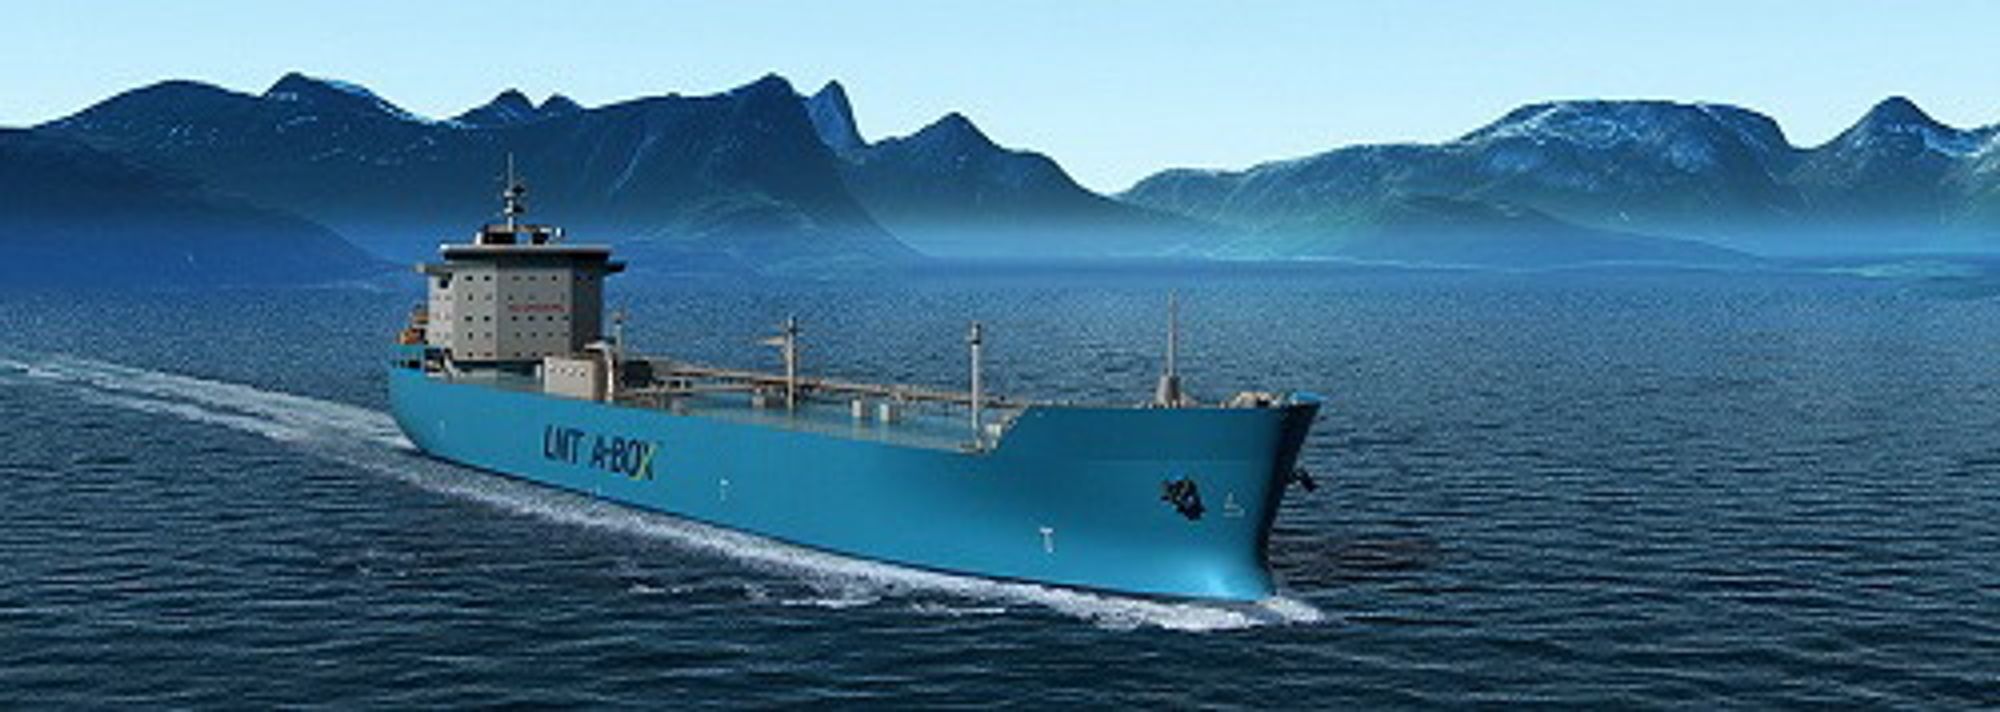 LNG-skip frakter flytende naturgass ved svært lav temperatur for å komprimere gassvolumet. Naturgass består primært av metan og har miljøfordeler sammenlignet med andre fossile brennstoff.  